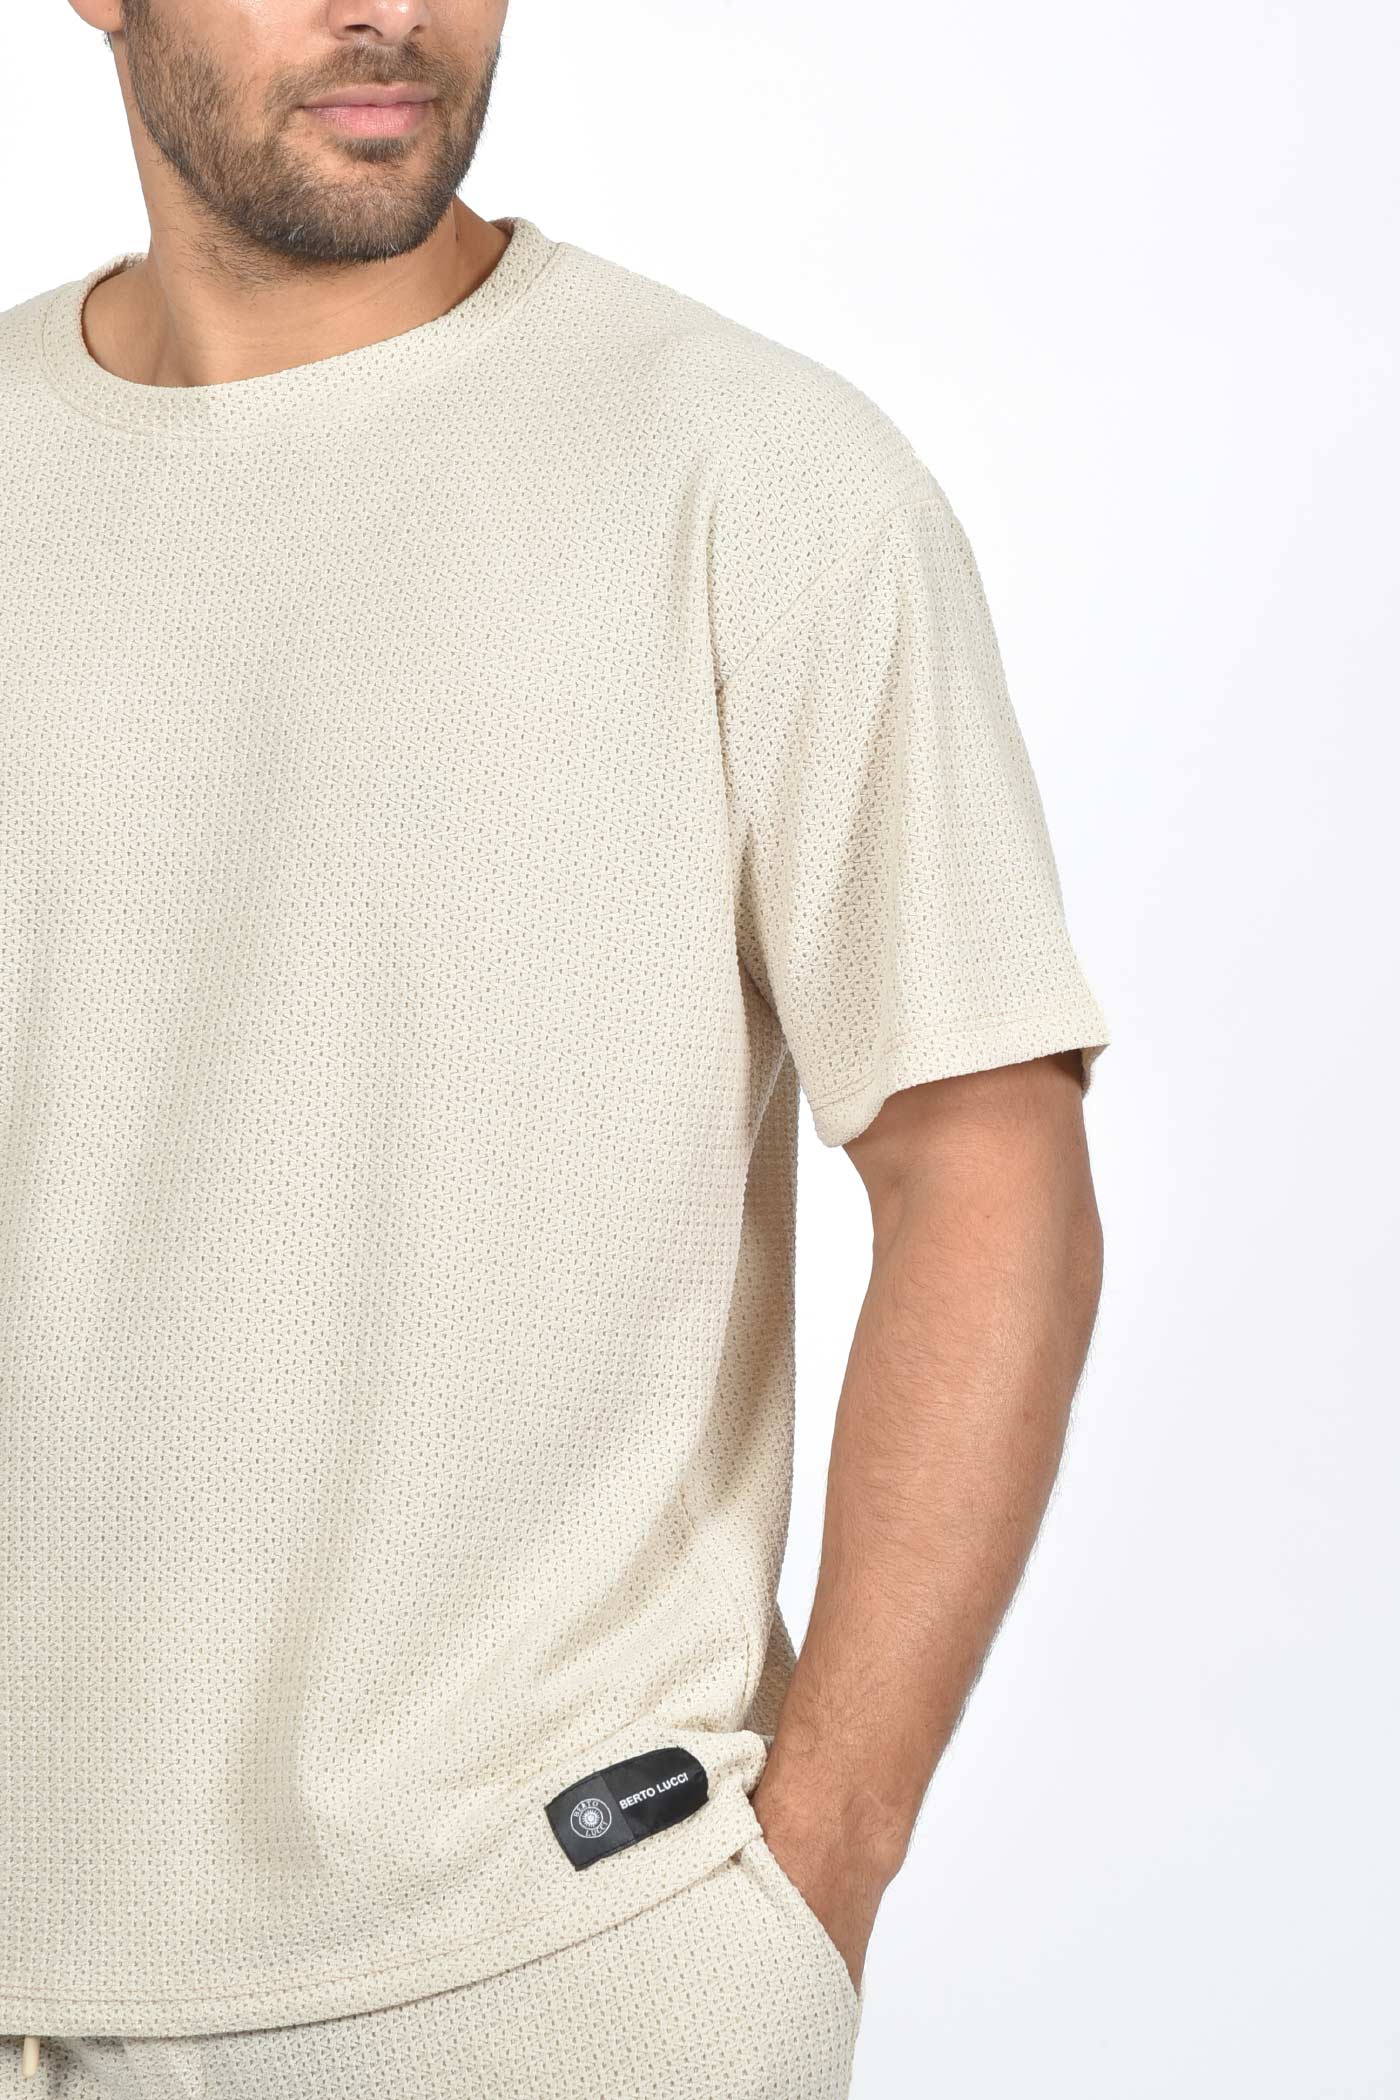 ανδρικό-oversized-t-shirt-με-πλεκτή-ύφανση